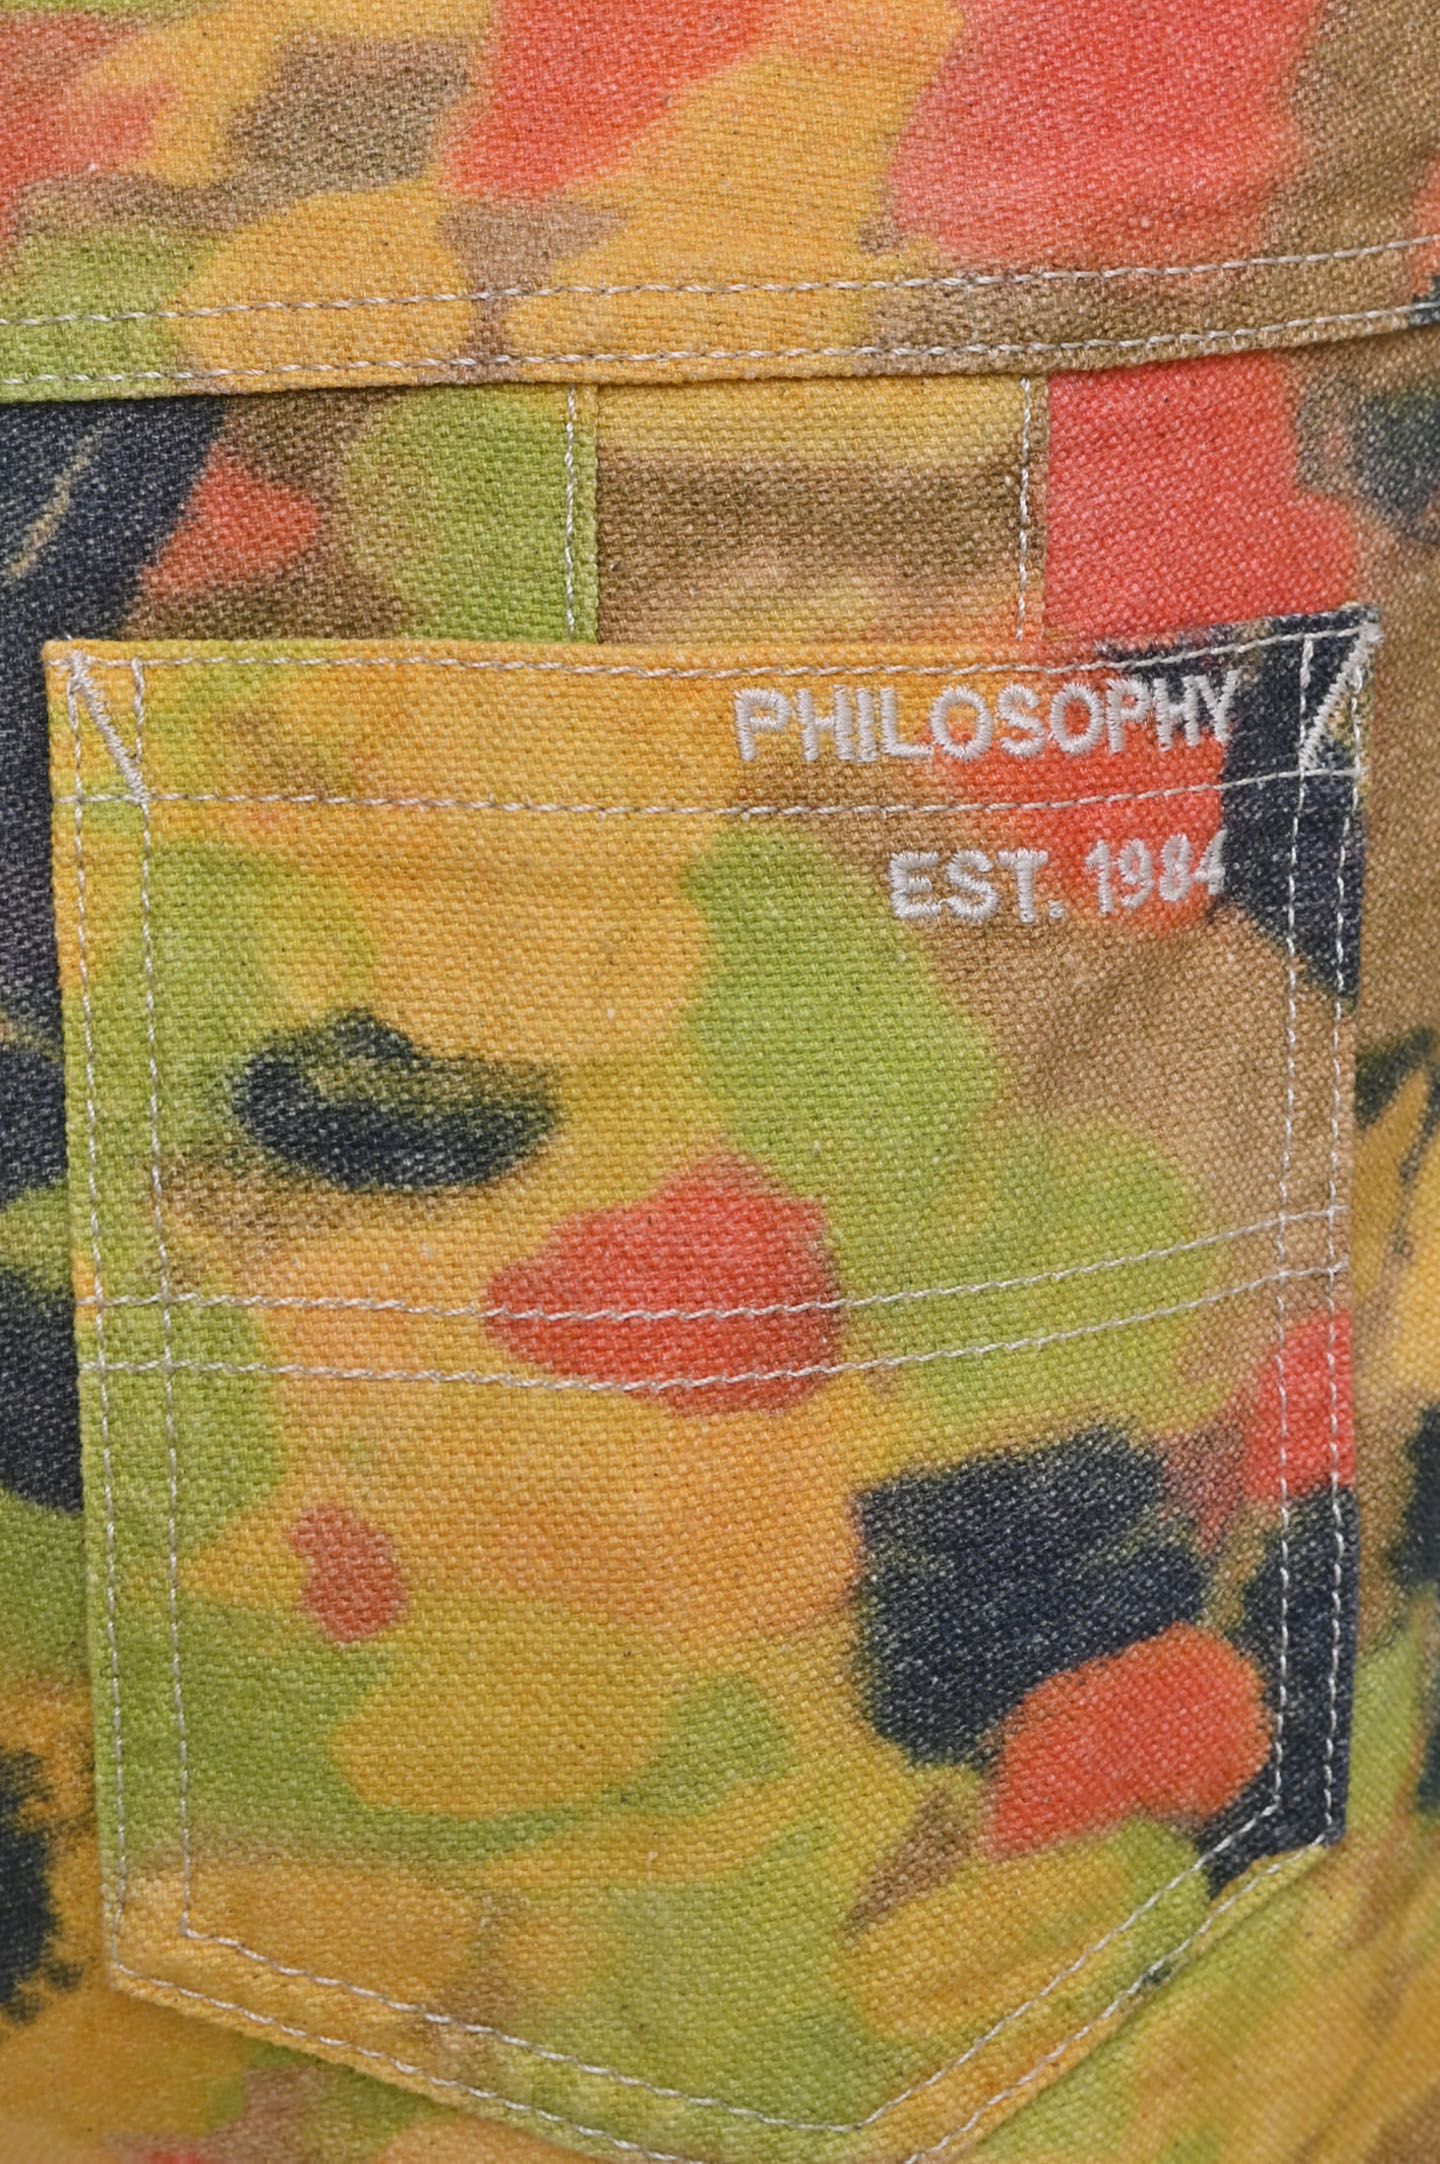 Шорты PHILOSOPHY DI LORENZO SERAFINI A0327 732, цвет: Разноцветный, Женский